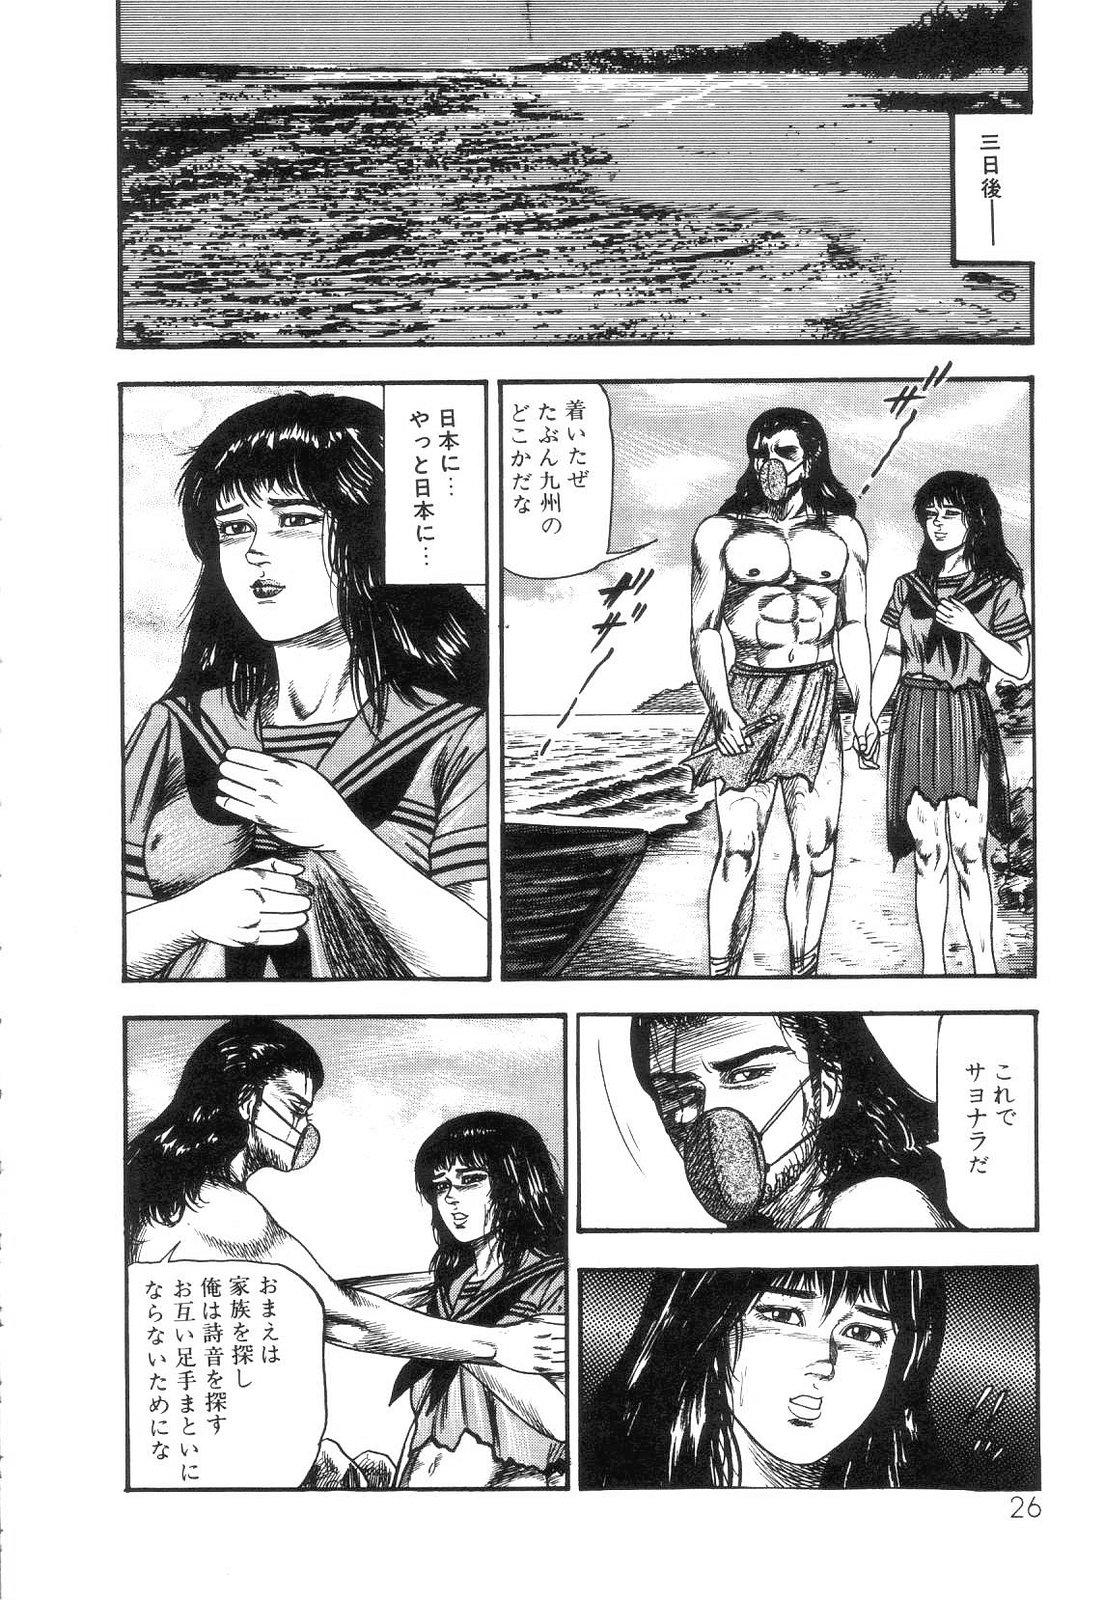 Shiro no Mokushiroku Vol. 4 - Bichiku Karen no Shou 27